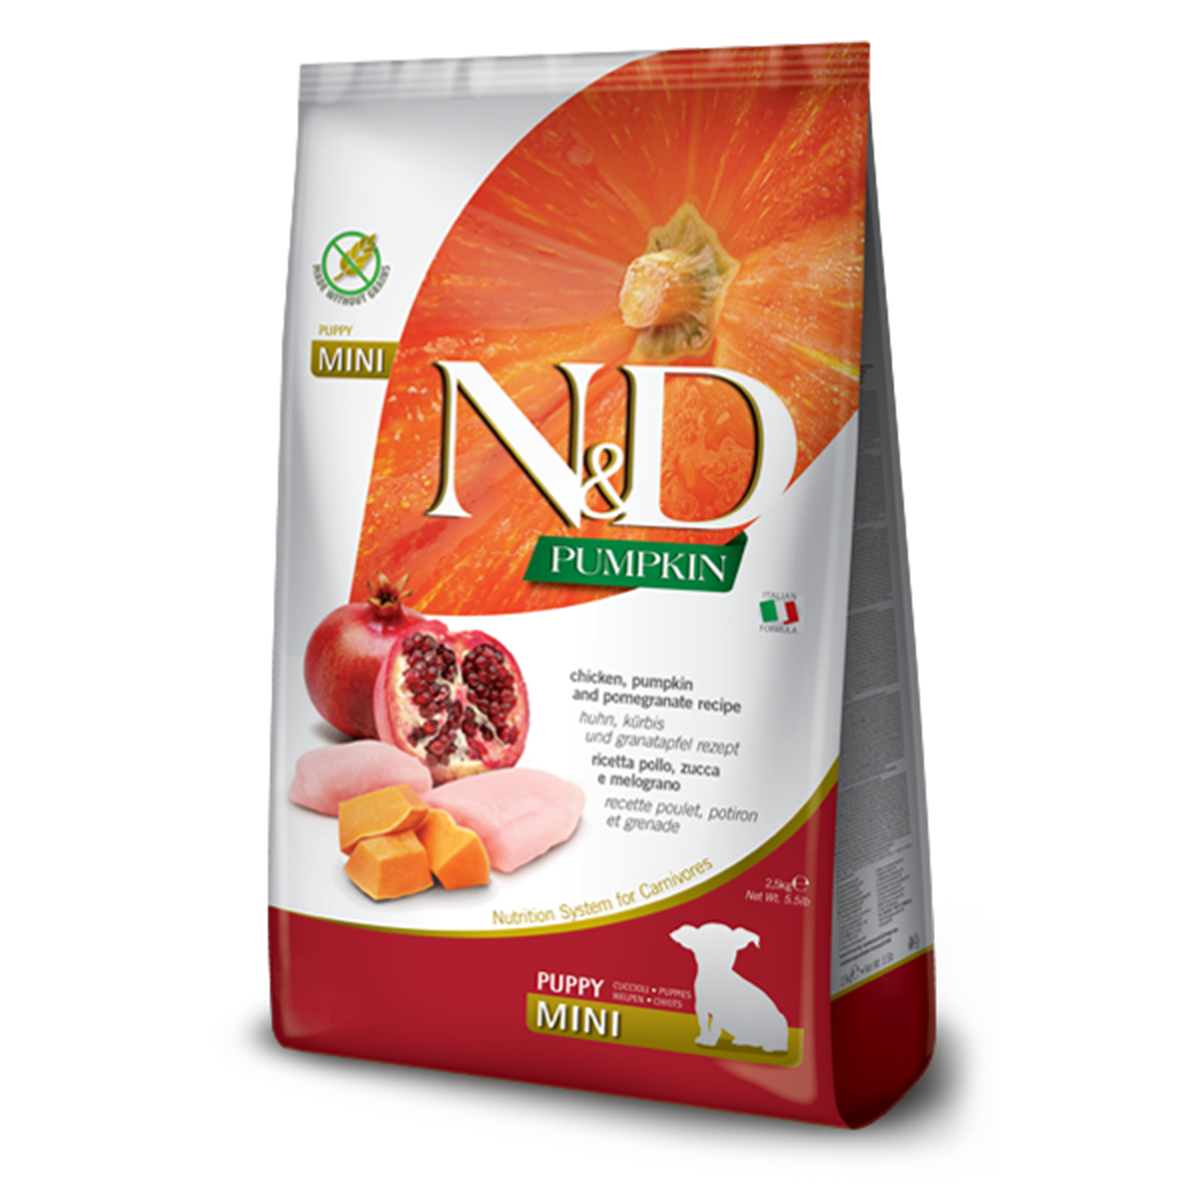 Farmina N&D Pumpkin Puppy Mini Dry Dog Food - Chicken & Pomegranate